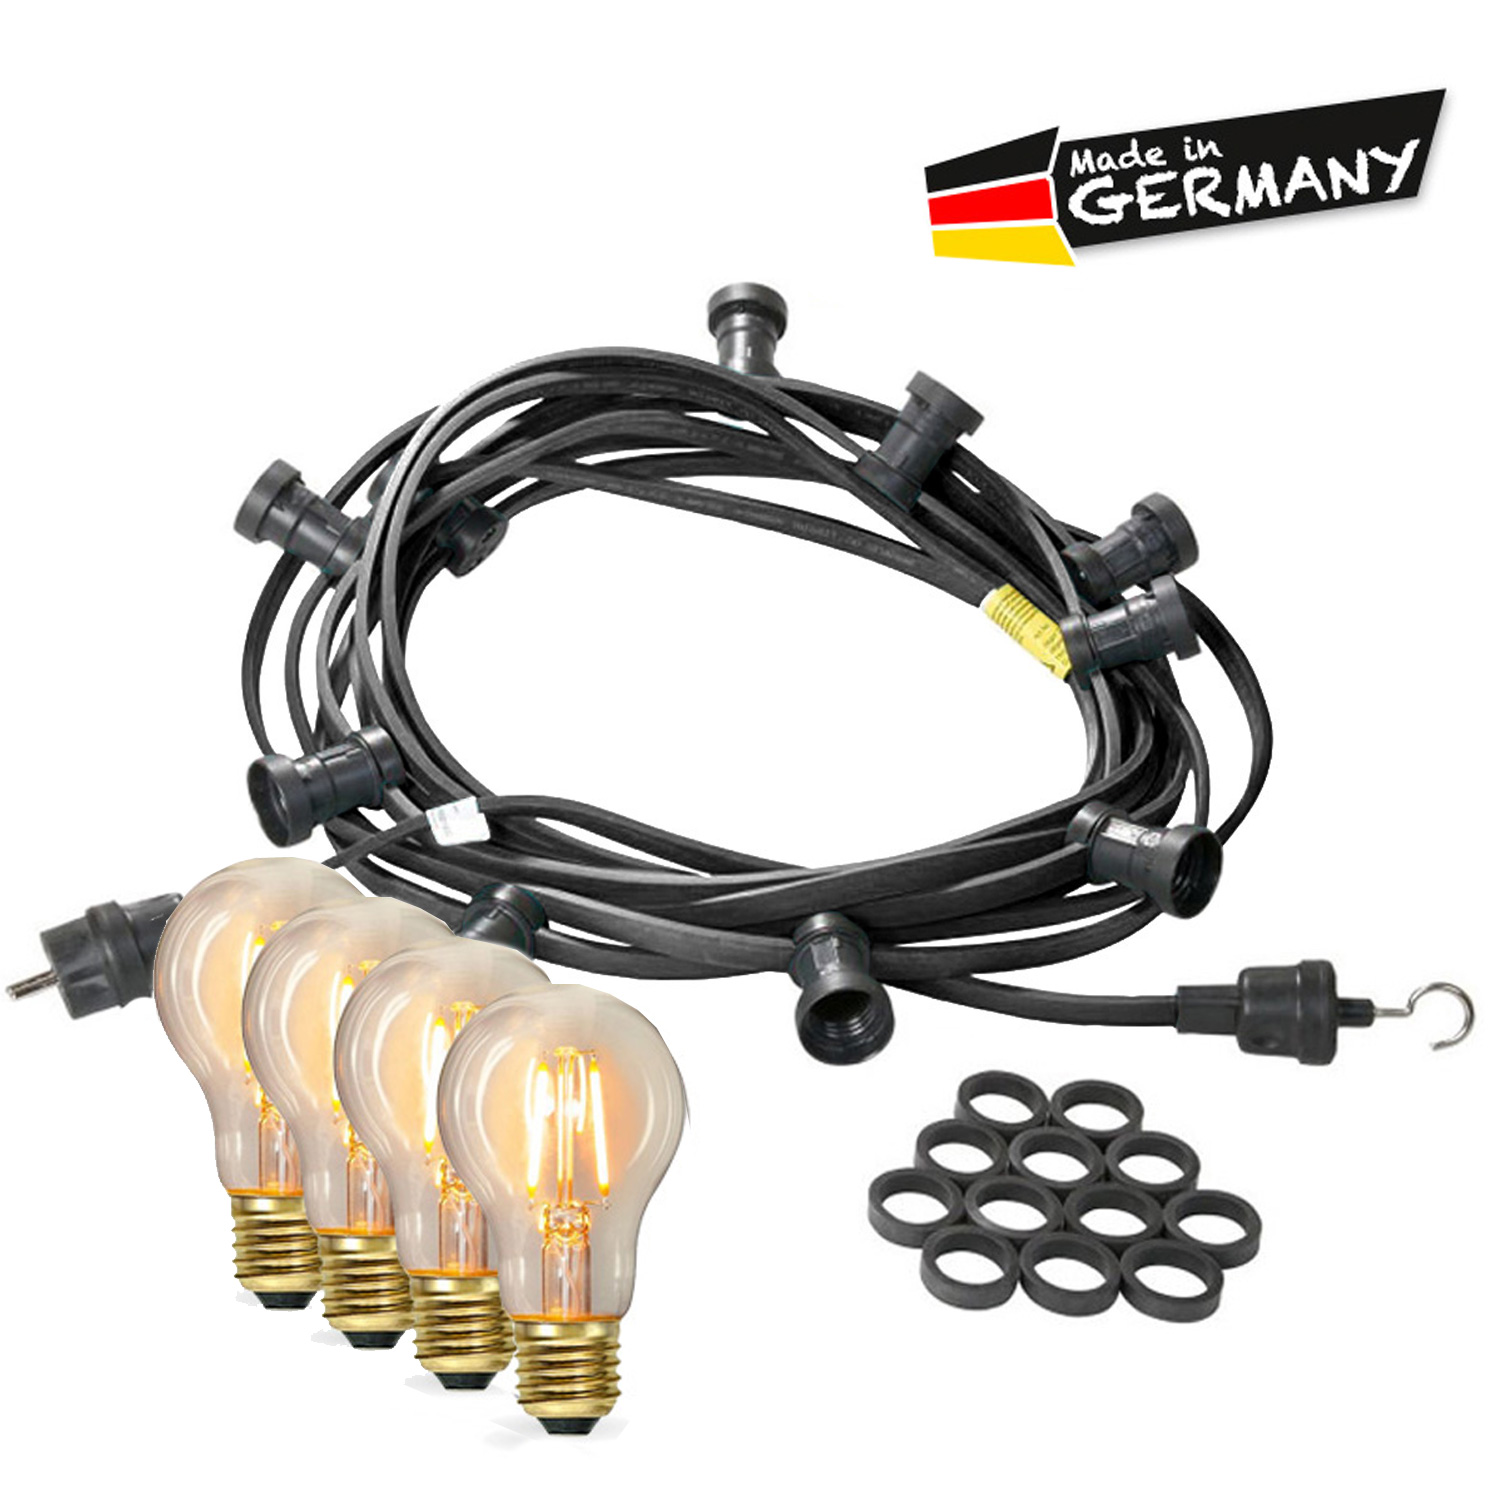 Illu-/Partylichterkette 20m - Außenlichterkette - Made in Germany - 40 x Edison LED Filamentlampen